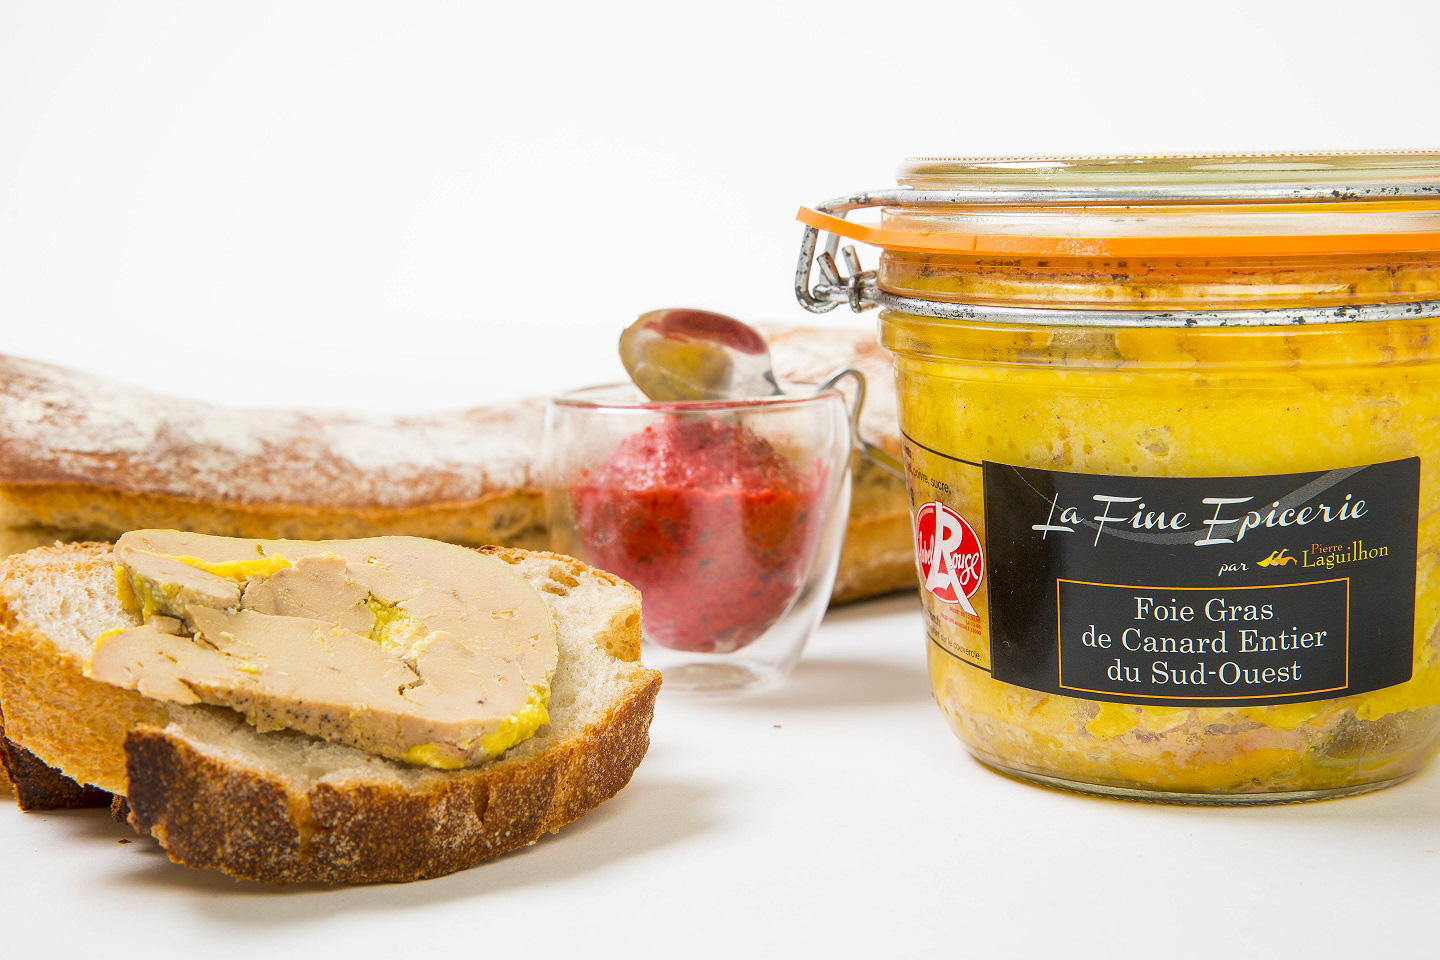 Foie gras entier de canard en verrine, La Ferme de Vers